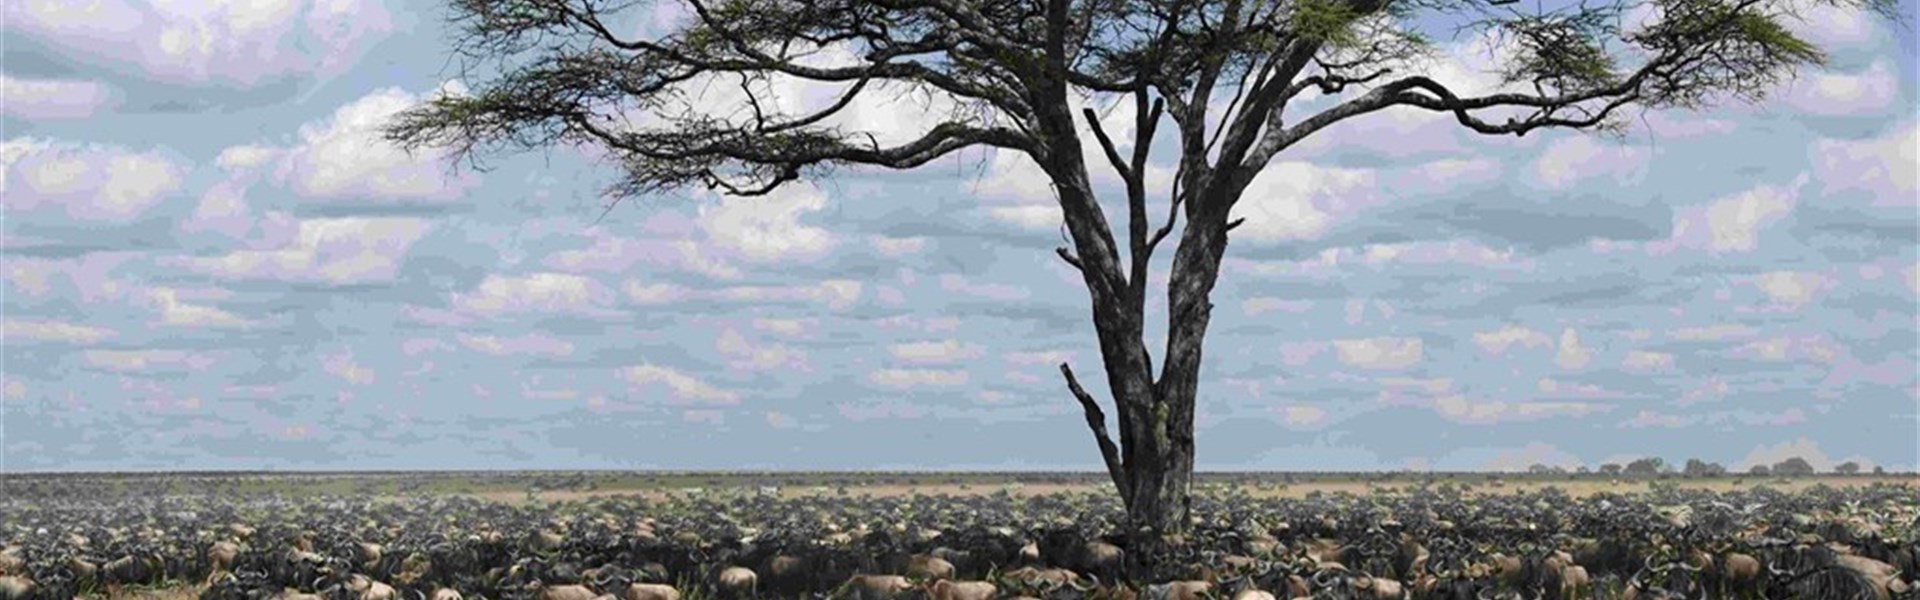 Velká migrace v Serengeti a kráter Ngorongoro a Tarangire - Tanzanie_Serengeti_velká migrace